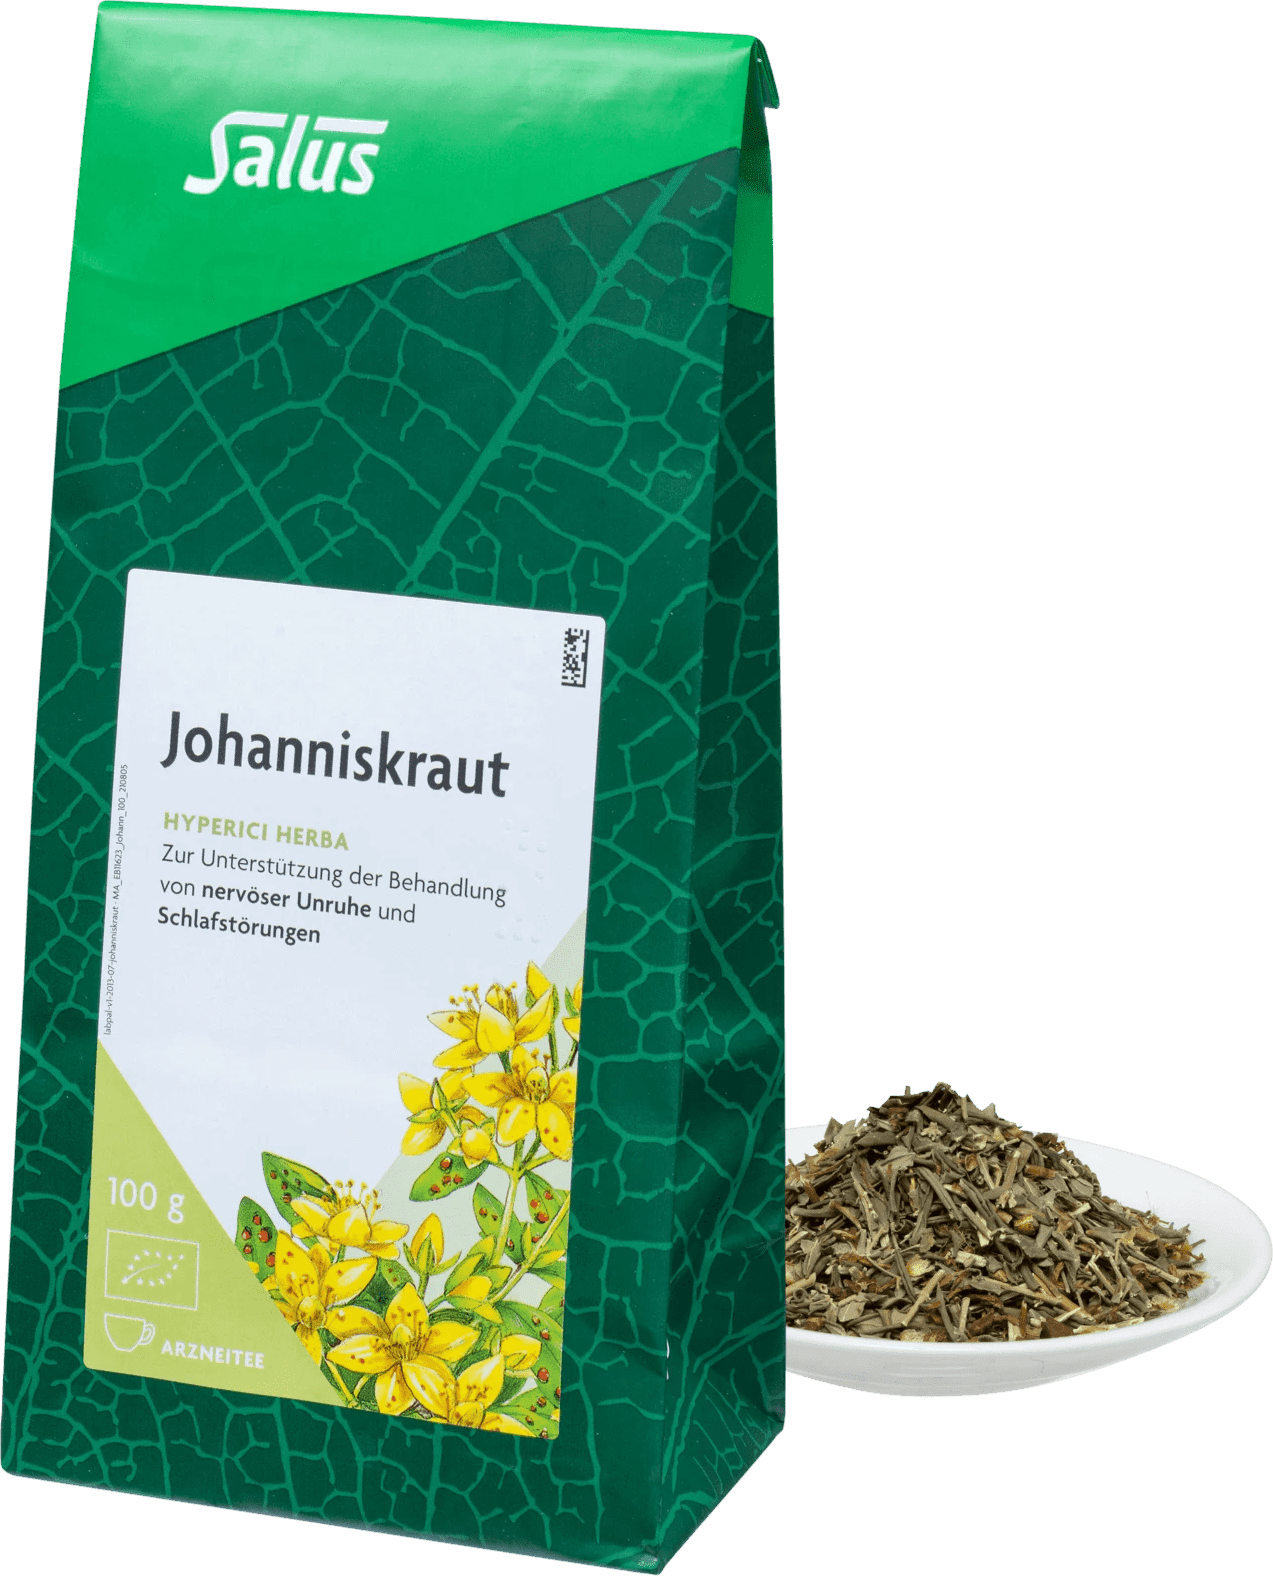 Salus Johanniskraut, Tee Bio 100g